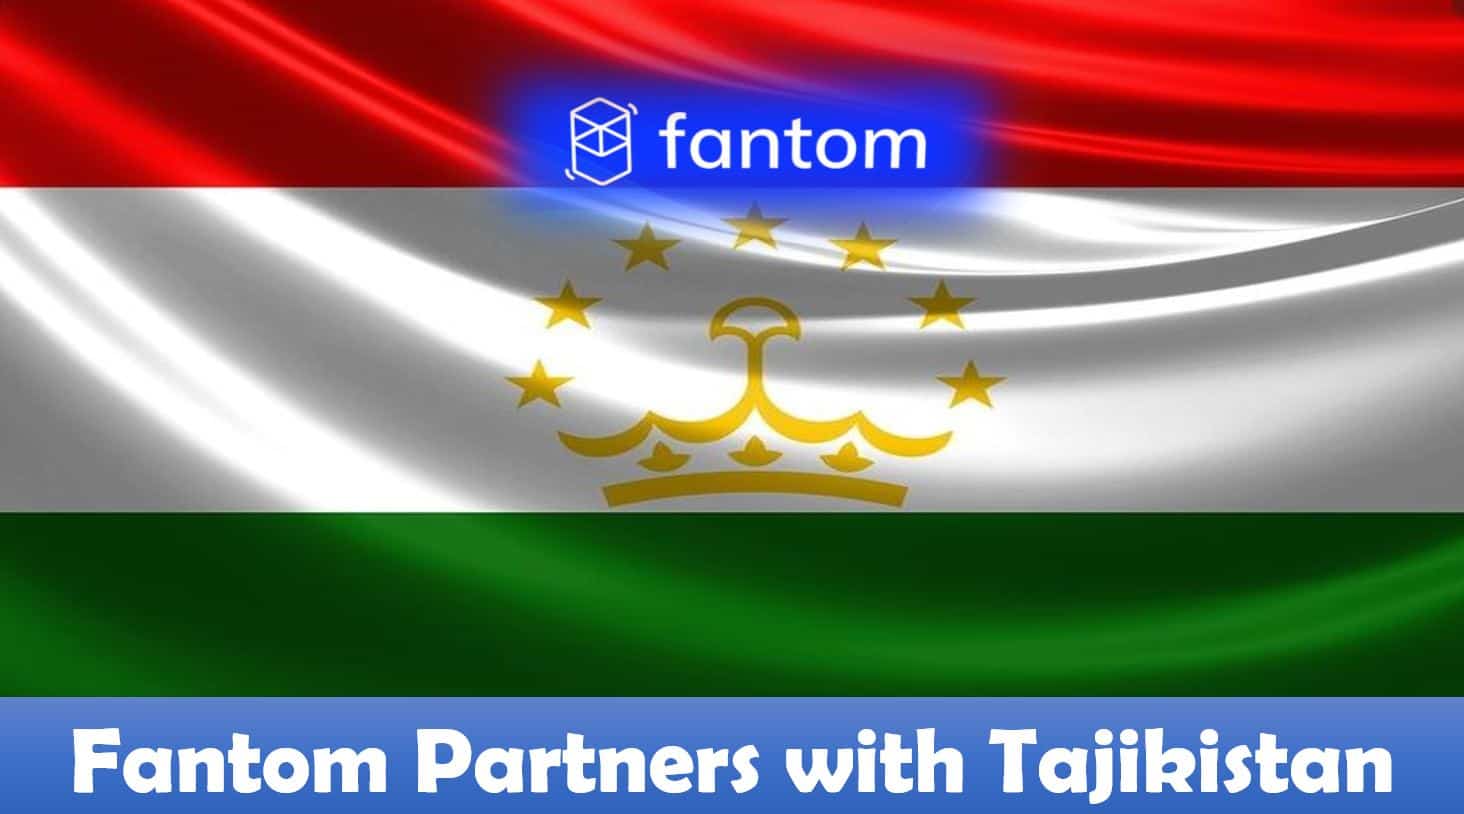 Fantom Partners with Tajikistan